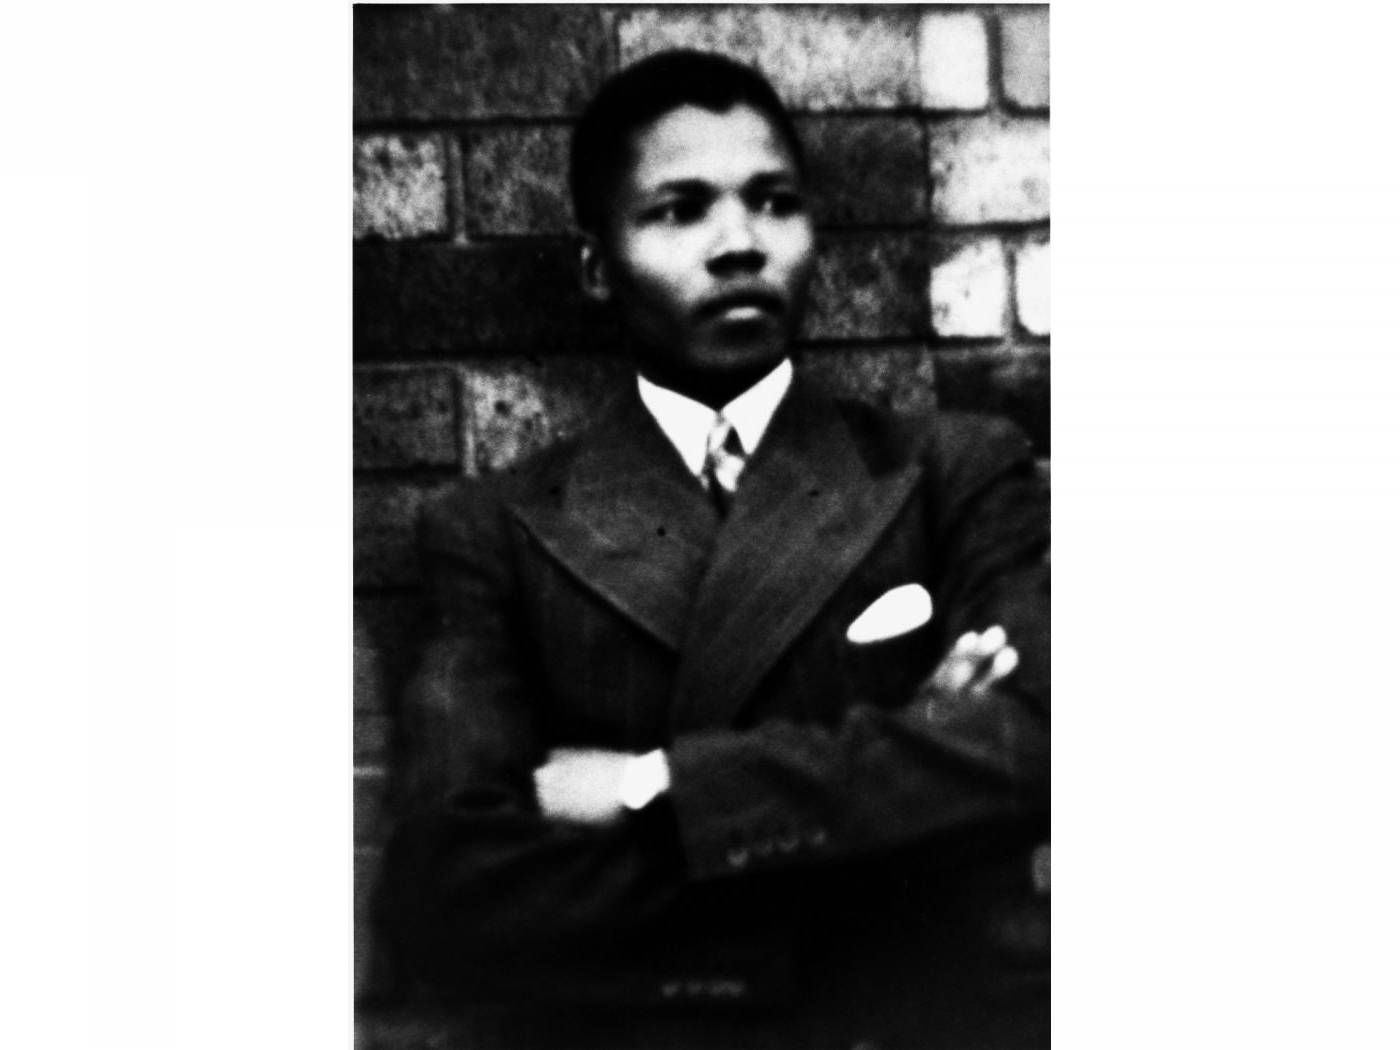 Young Mandela